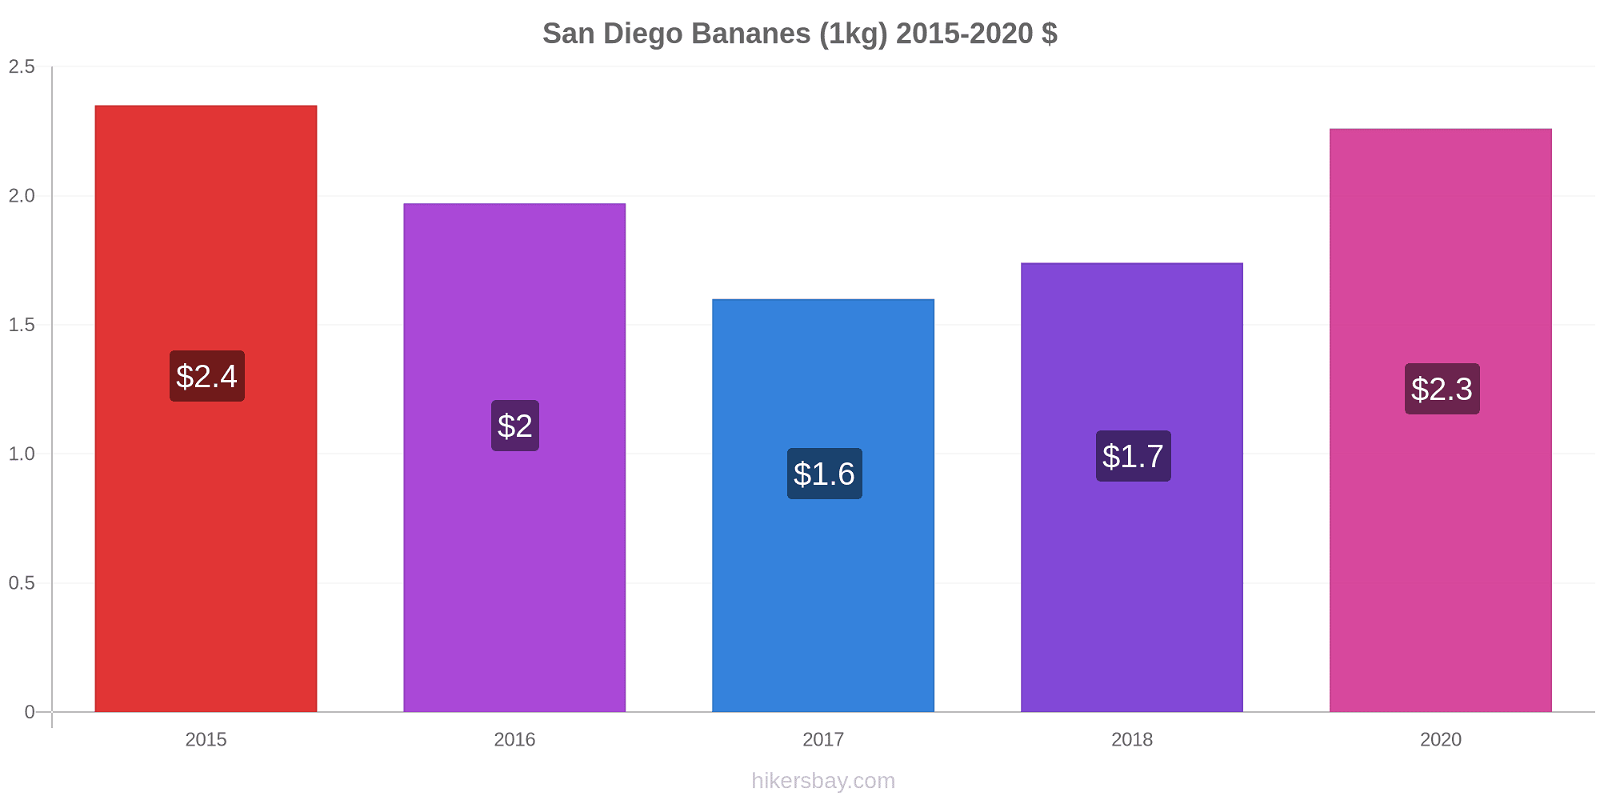 San Diego changements de prix Bananes (1kg) hikersbay.com